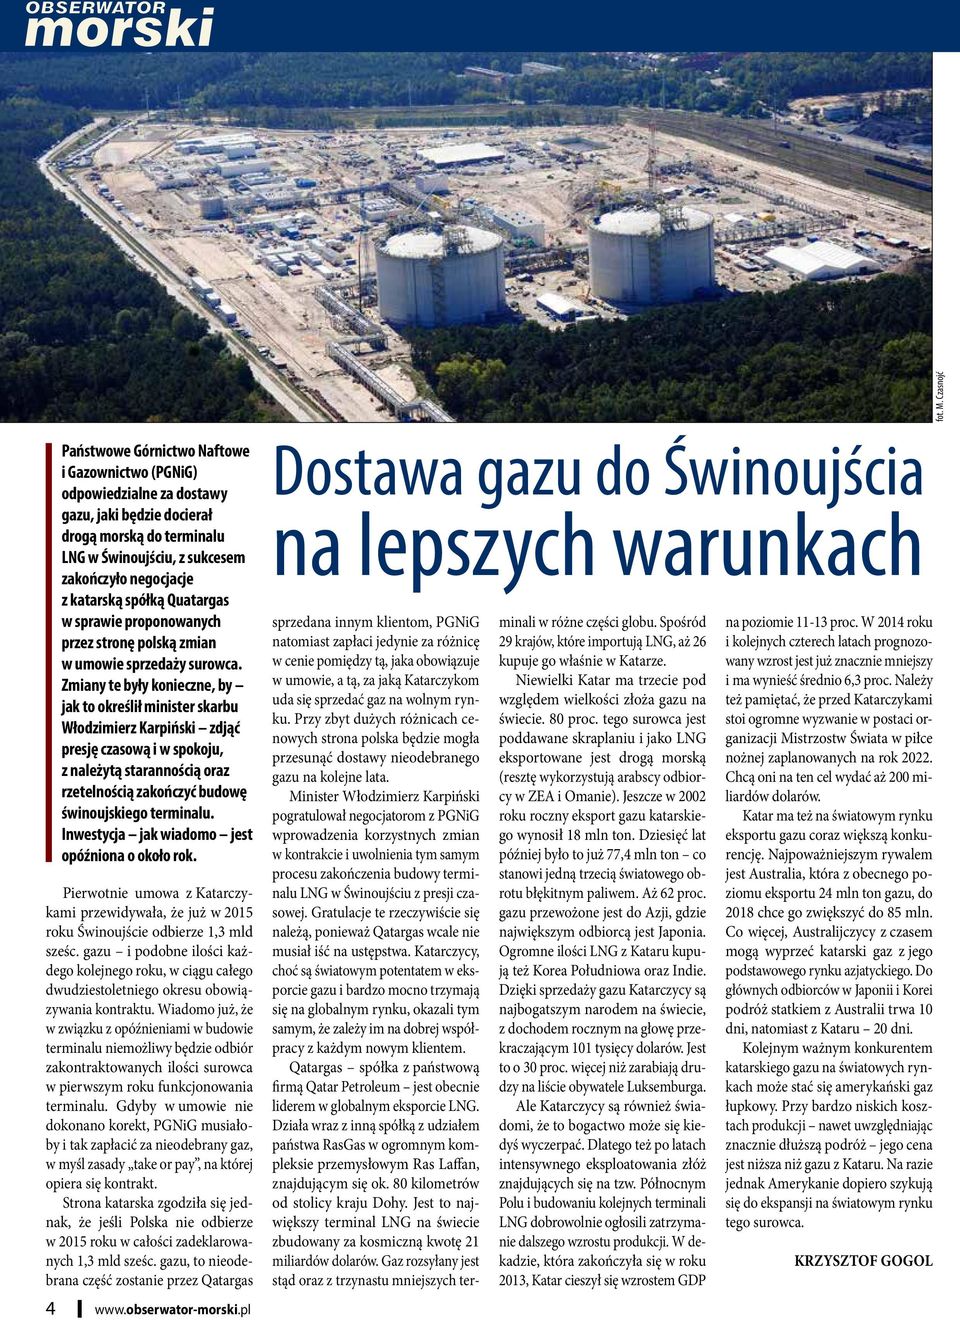 katarską spółką Quatargas w sprawie proponowanych przez stronę polską zmian w umowie sprzedaży surowca.